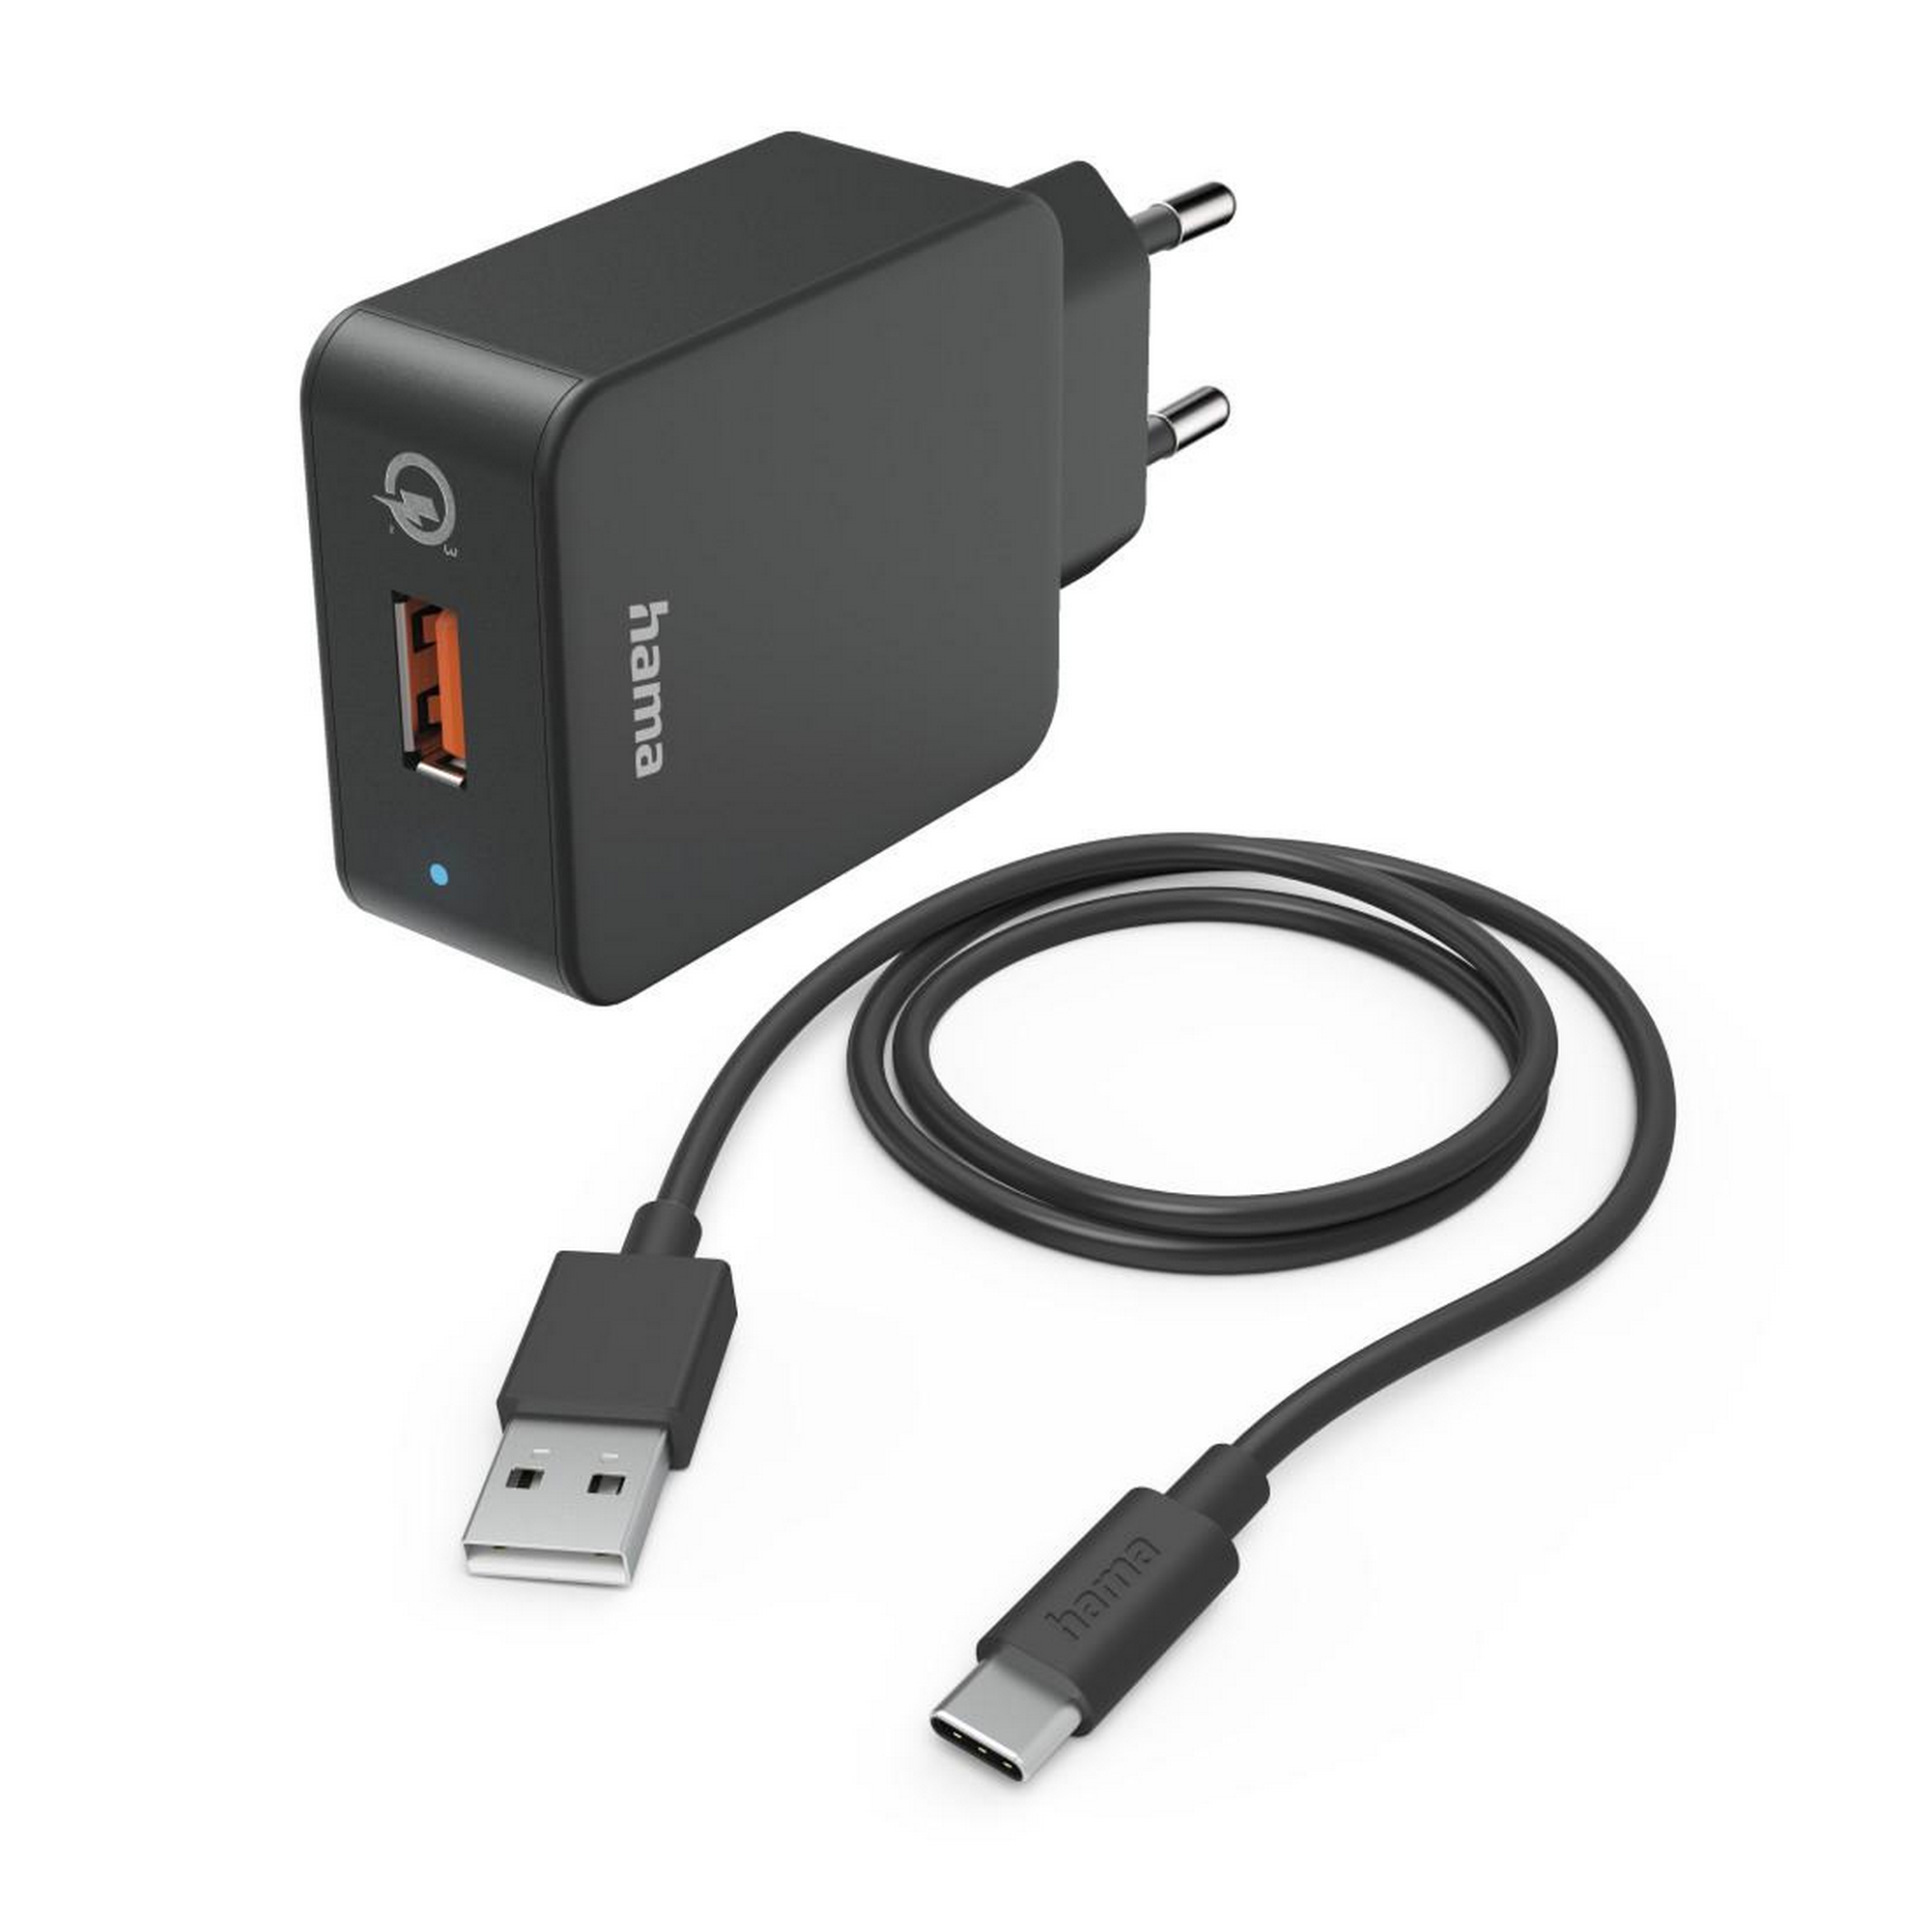 Schnellladegerät schwarz mit Ladekabel USB-C, Qualcomm 19,5 W + product picture